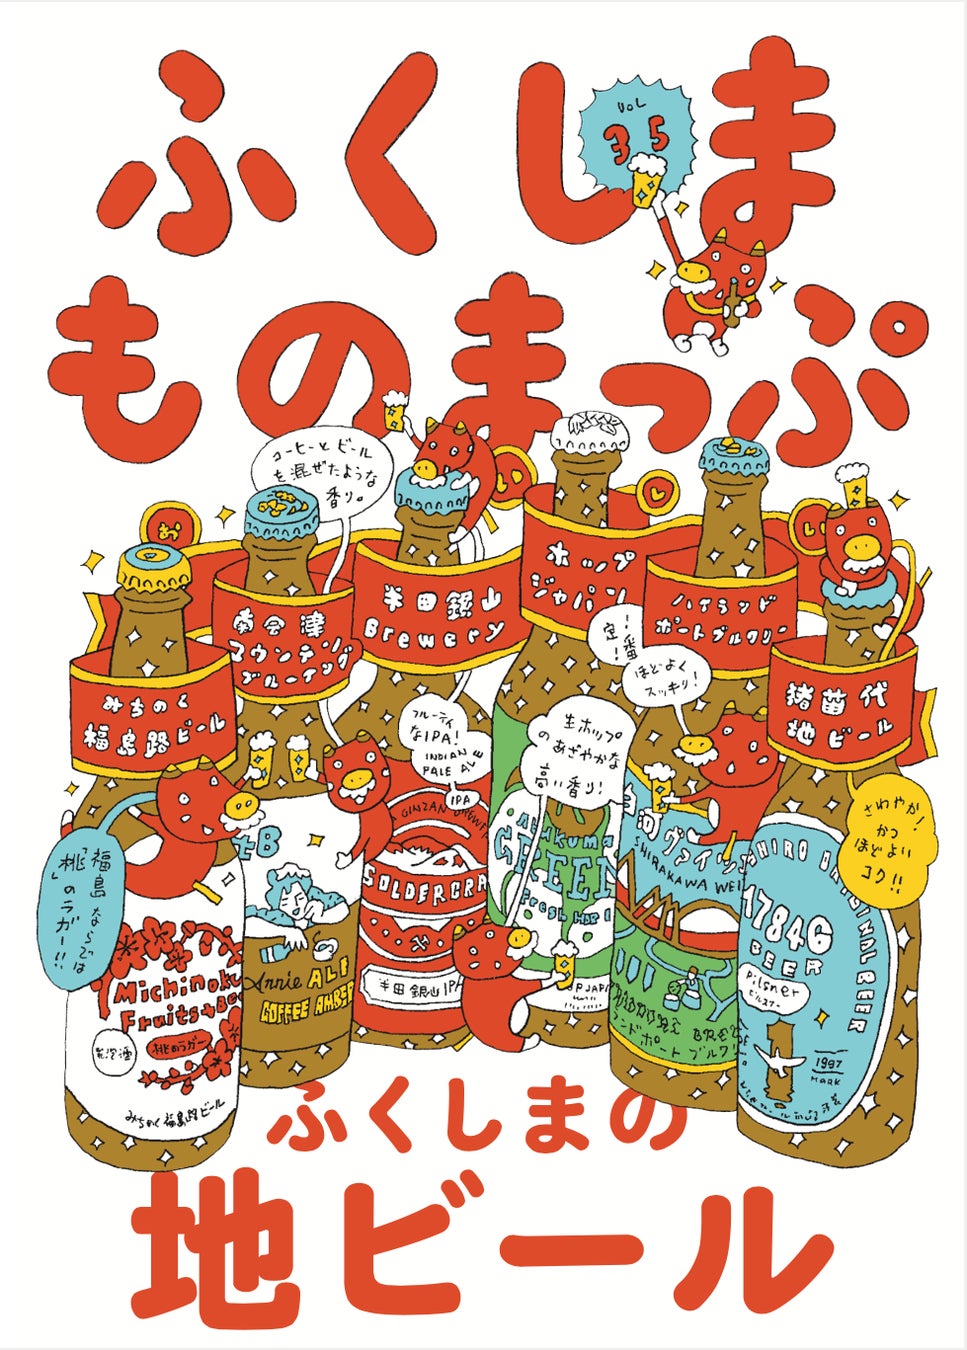 寄藤文平さんが描き下ろした「ふくしまものまっぷ Vol.35」の表紙